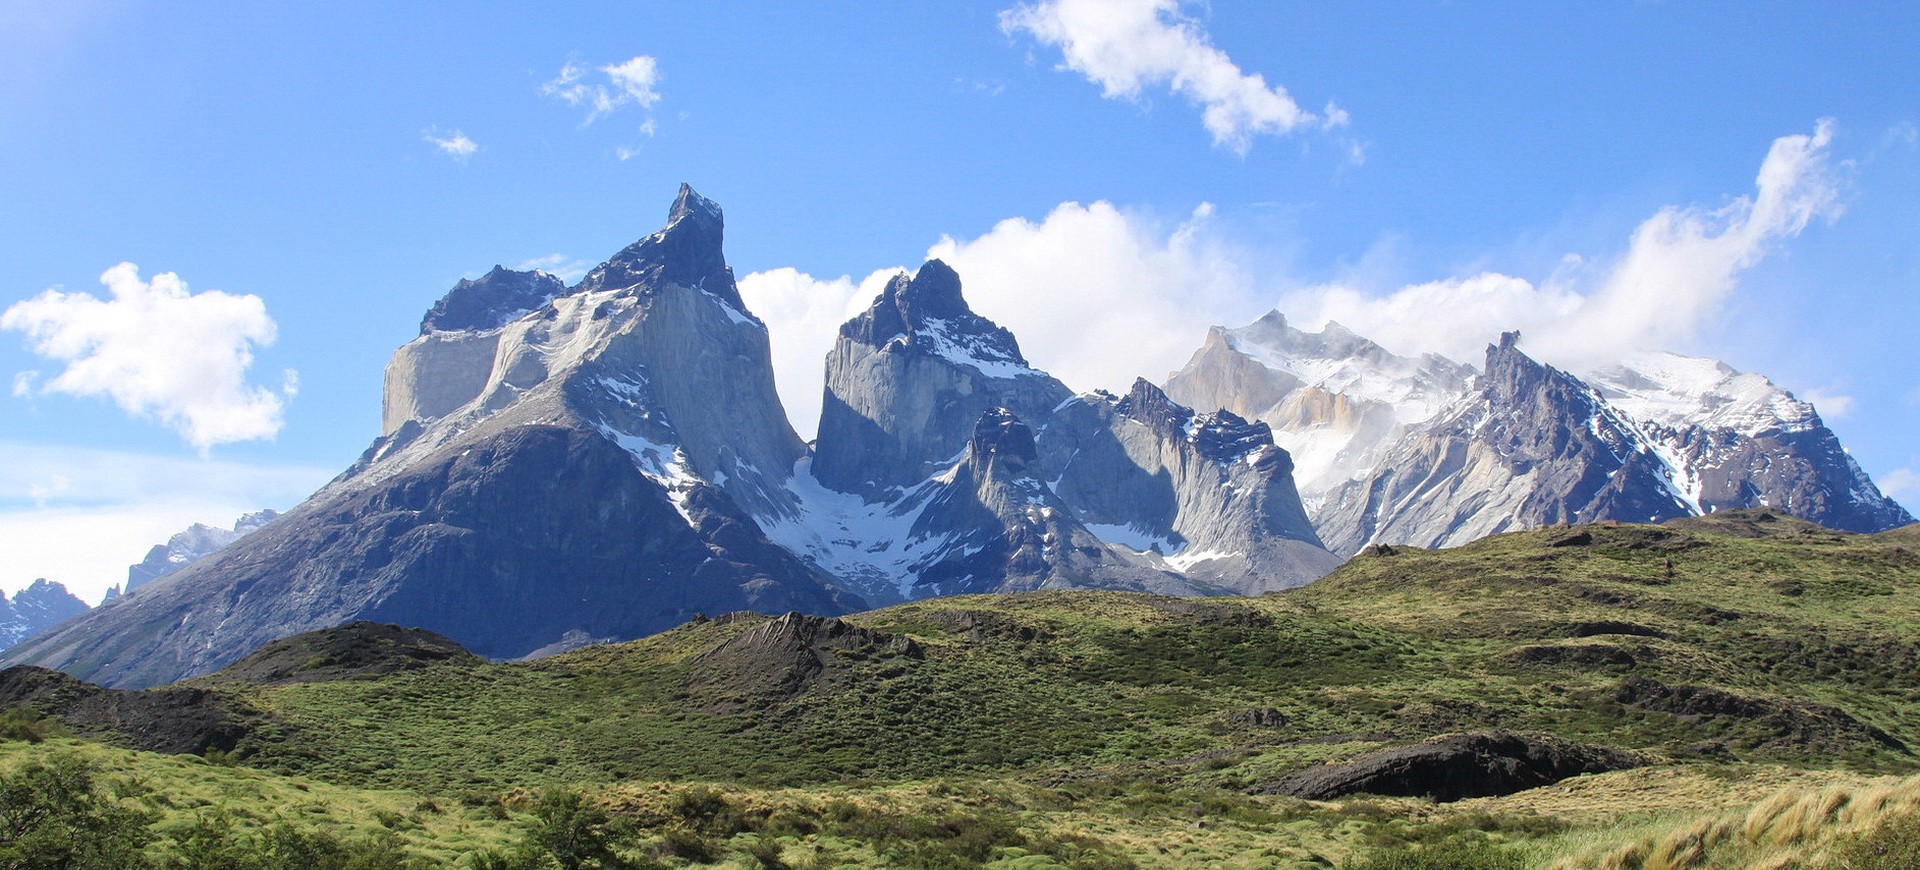 Chili Torres del Paine